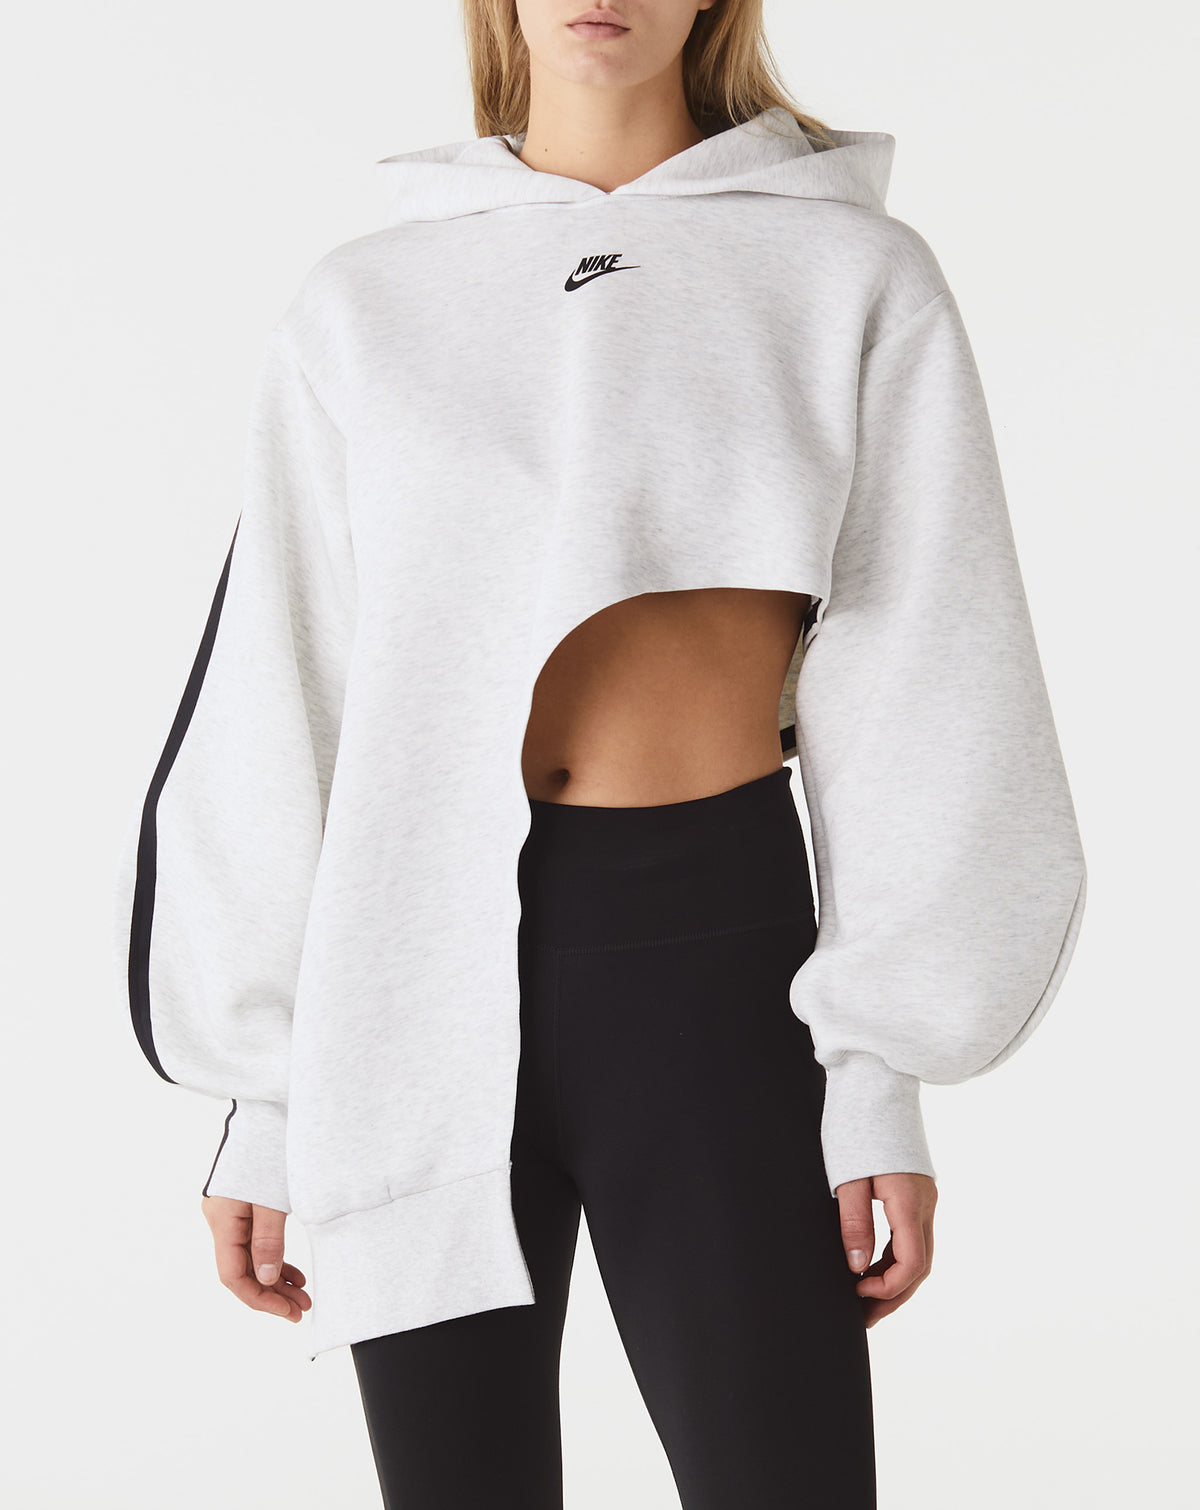 Nike Women's Tech Fleece Oversized Asymmetrical Hoodie - Rule of Next Apparel